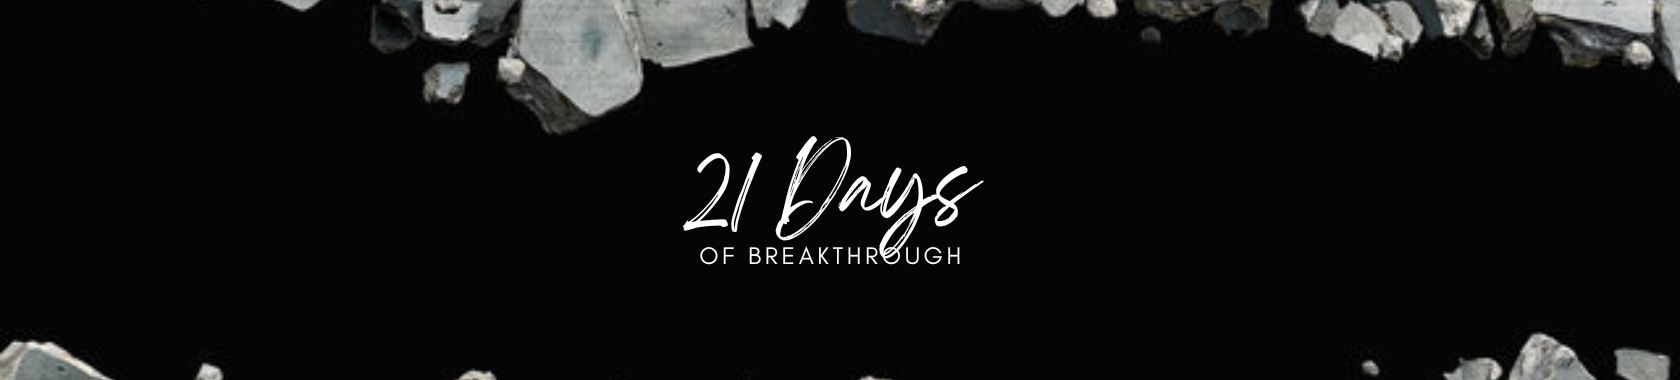 21 Days of Breakthrough Sermon Series